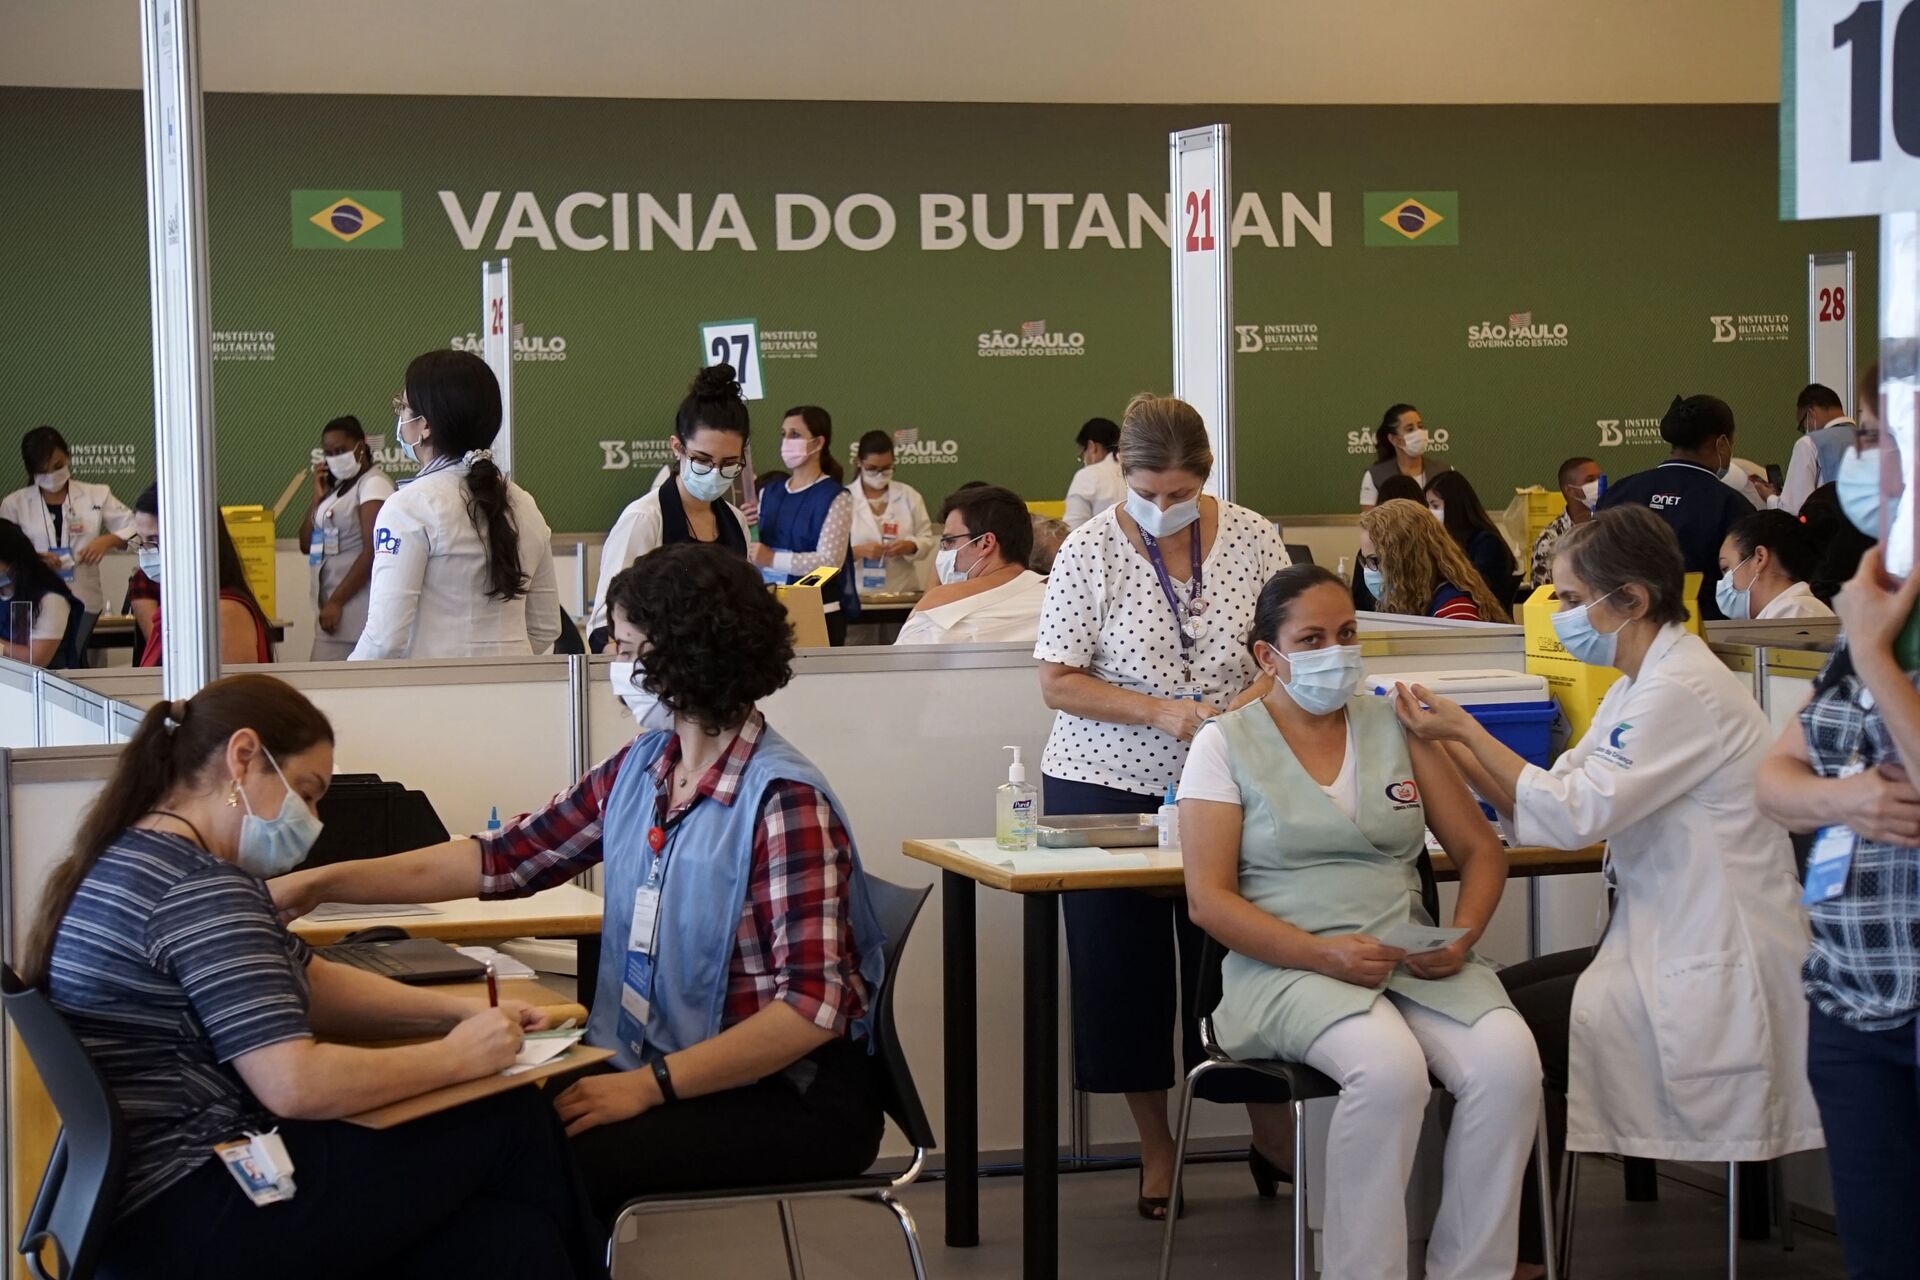 Falta de vacinas não é culpa da Anvisa, mas do governo, avaliam especialistas em saúde pública - Sputnik Brasil, 1920, 18.02.2021